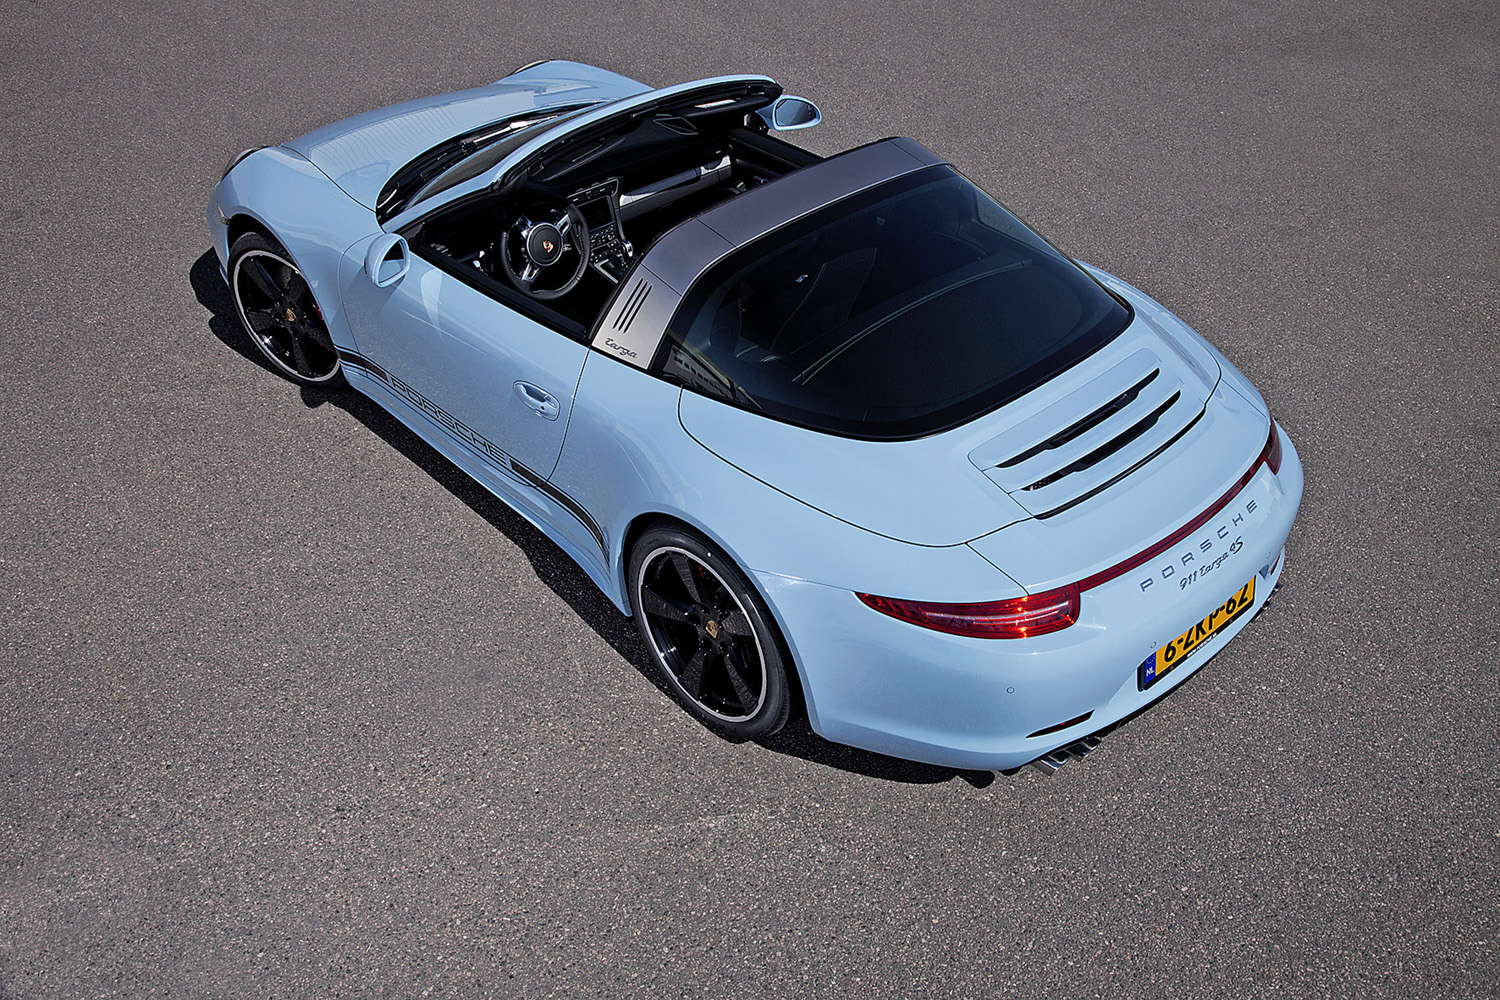 Speciaal voor Nederland: Porsche 911 Targa 4S Exclusive Edition